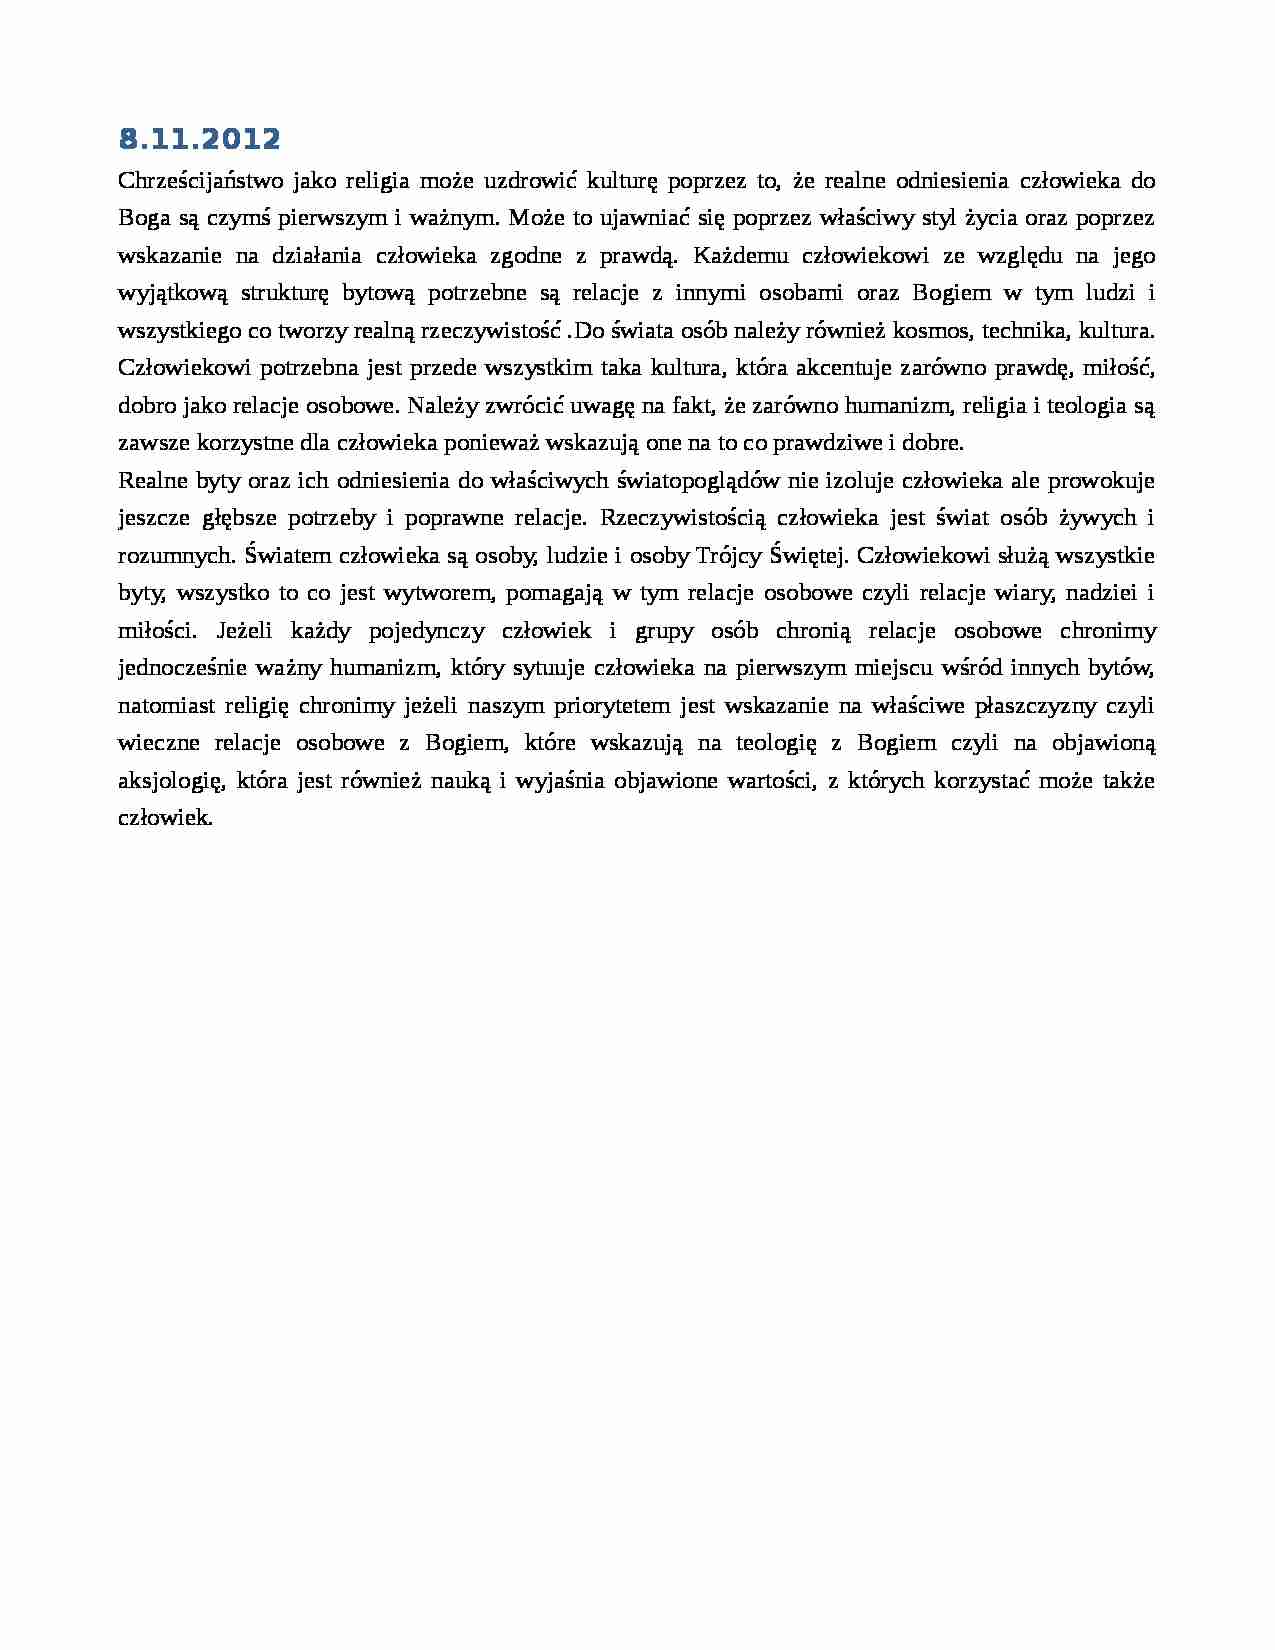 Filozofia kultury - notatki z wykładu 4 z dn. 8.11.2012 r. - strona 1